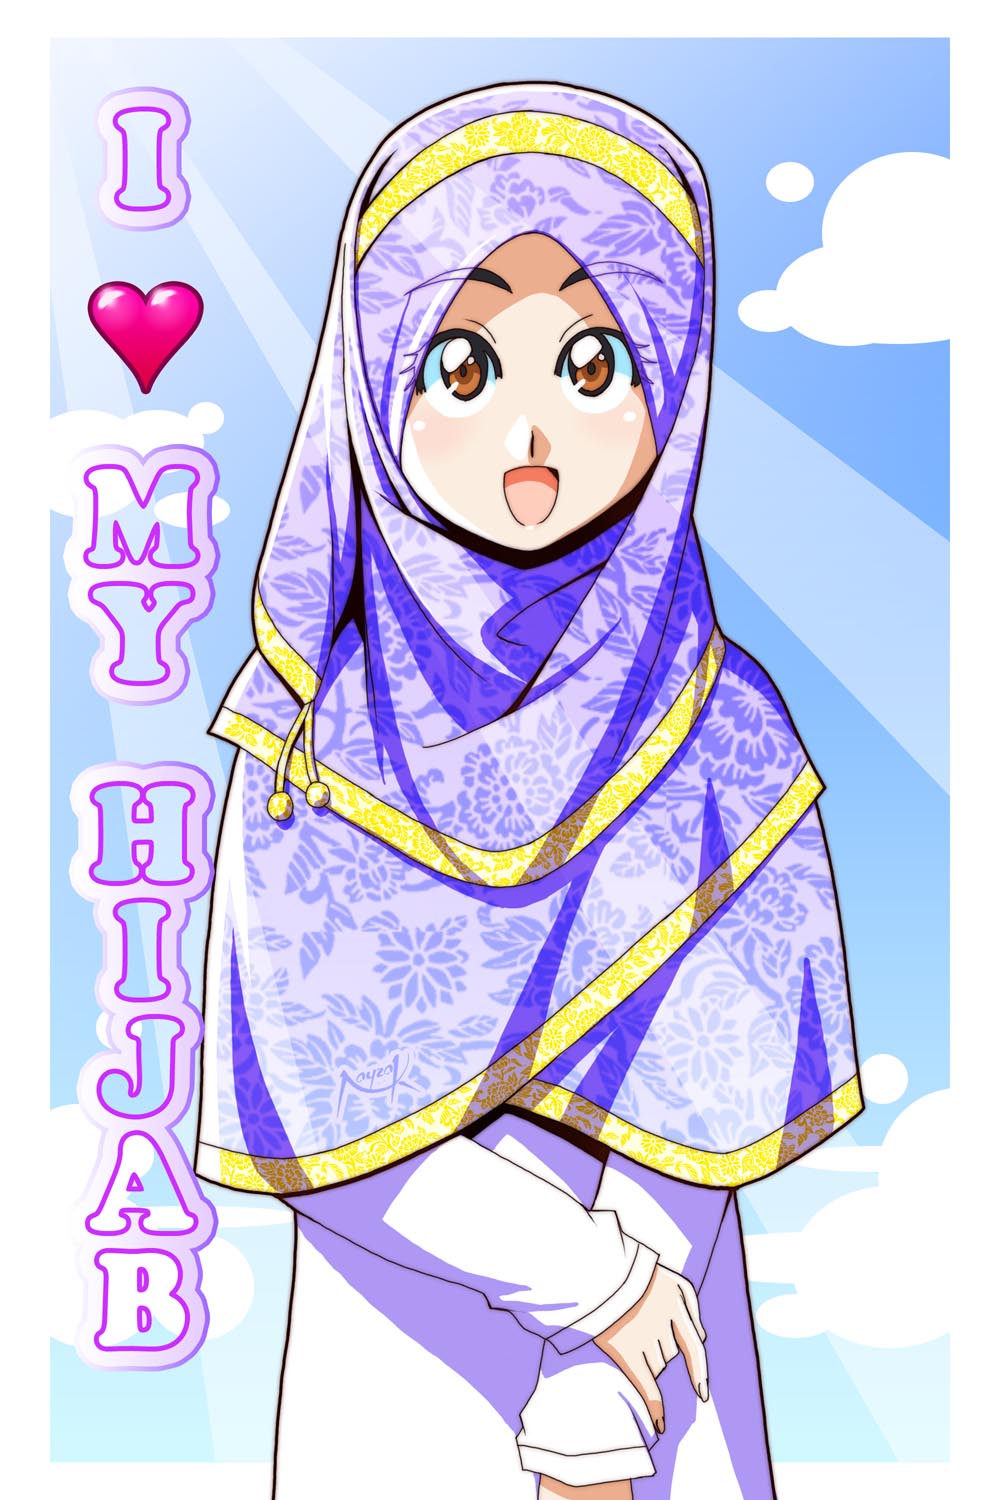  Animasi  Lucu Hijab  Populer Dan Terlengkap Top Meme